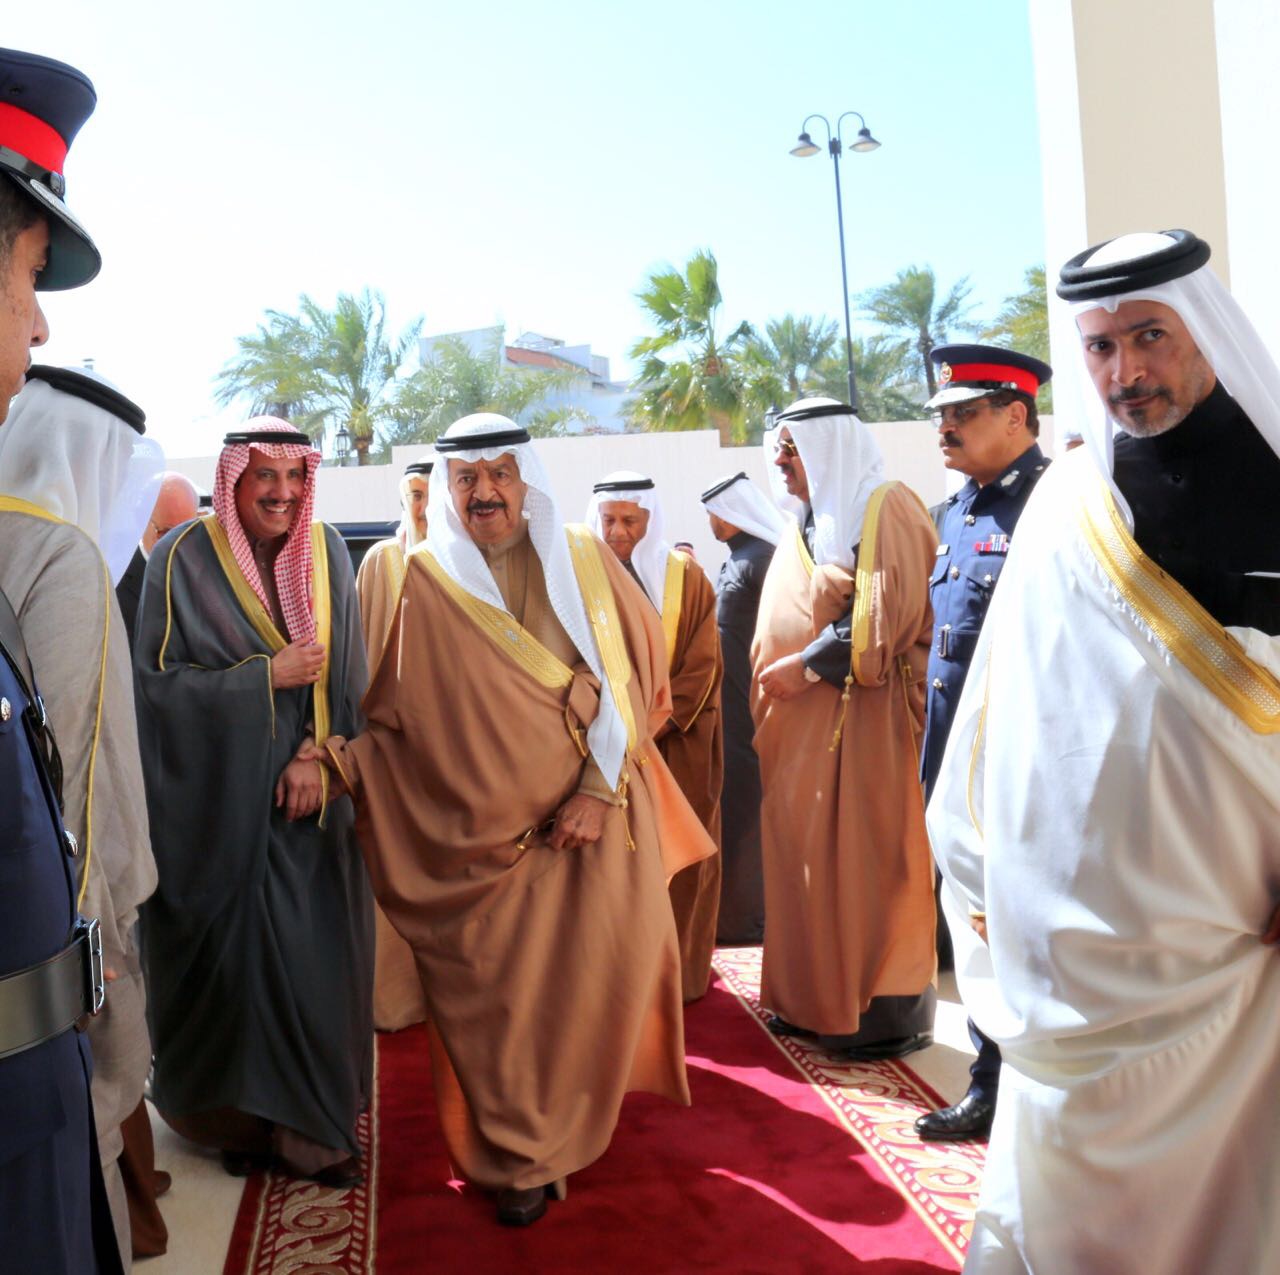 سفير دولة الكويت لدى مملكة البحرين الشيخ عزام الصباح أثناء استقباله  رئيس الوزراء البحريني الامير خليفة بن سلمان آل خليفة